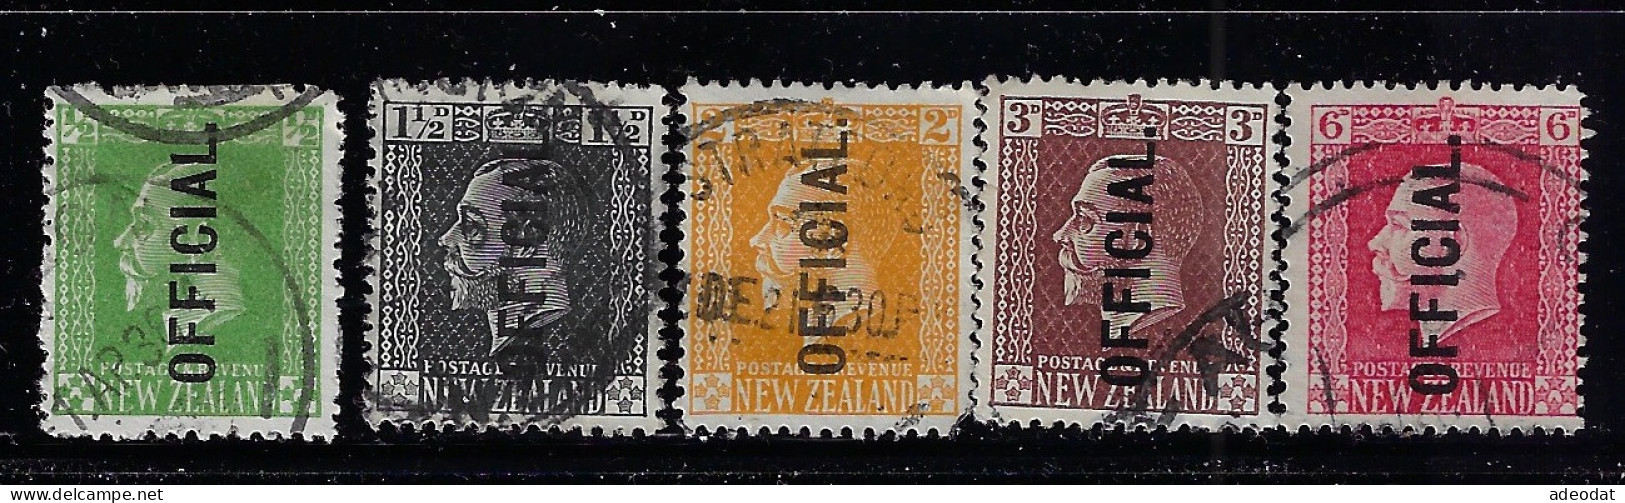 NEW ZEALAND 1915 0FFICIAL STAMPS  SCOTT #O41,O43,O45,O46,O48 USED - Oficiales